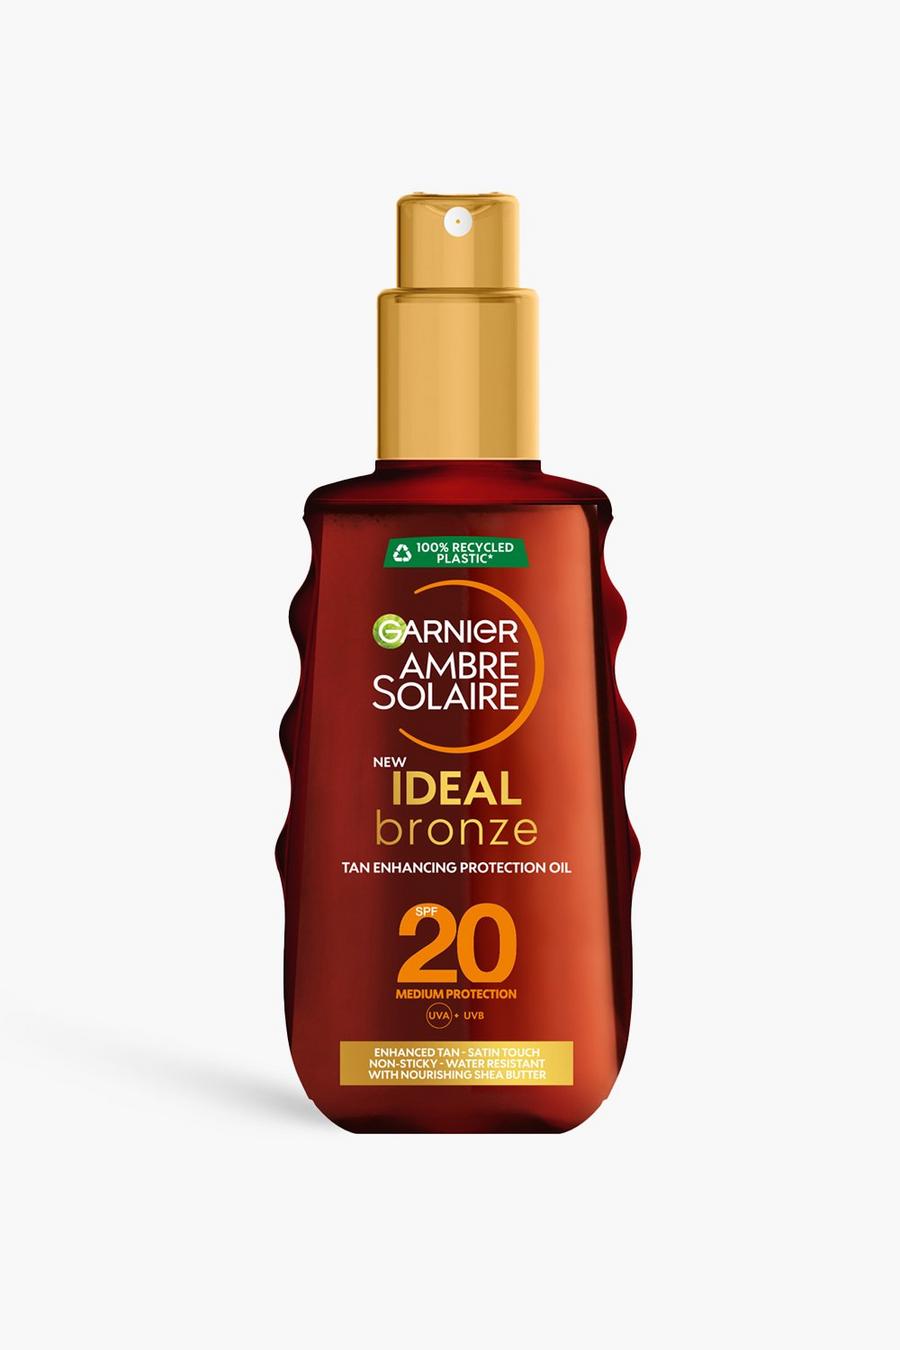 Garnier Ambre Solaire Ideal Bronze Protective Oil Sun Cream Spray SPF20, UVA & UVB Protection, 150ml 